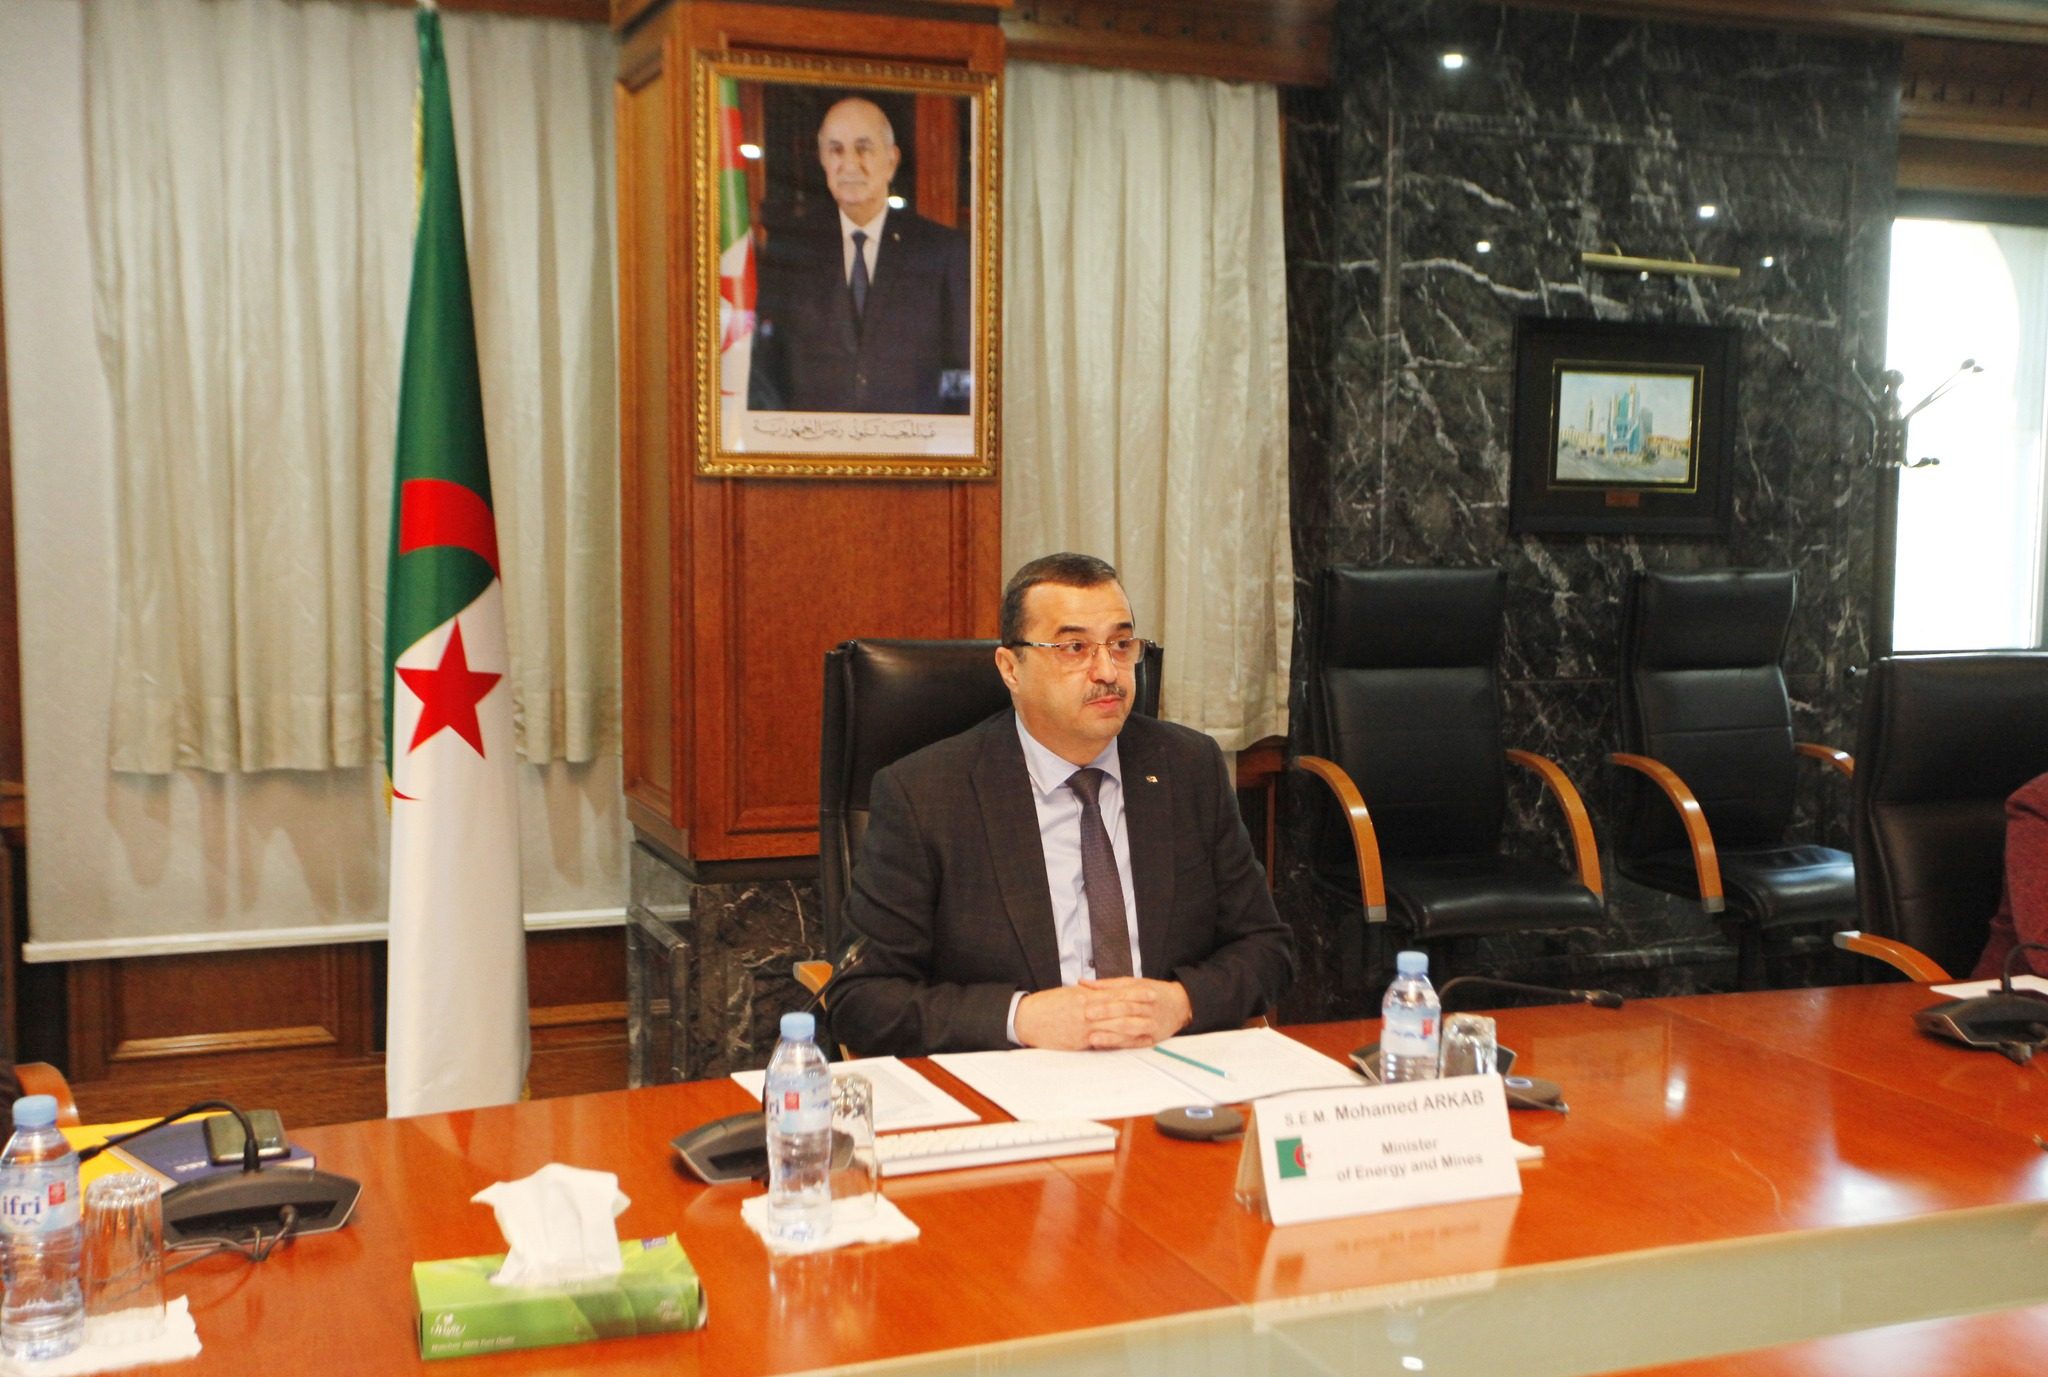 وزير الطاقة يتحدث عن استثمارات قطاع النفط والغاز في الجزائر